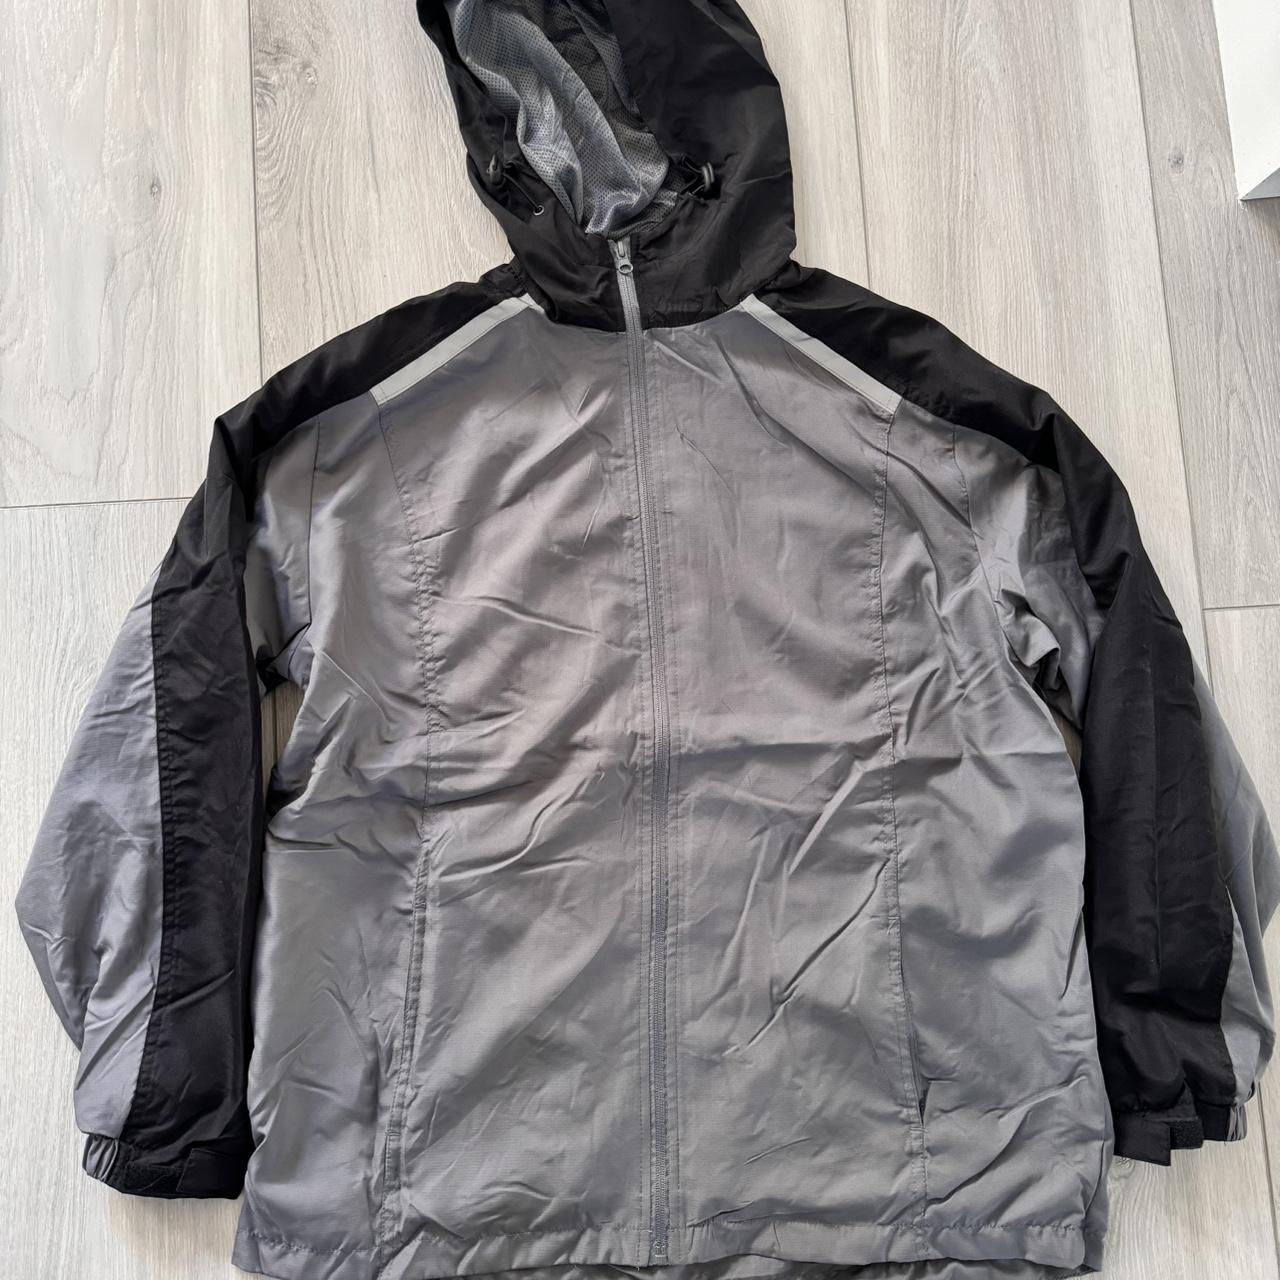 Grey/black windbreaker with hoodie - new with tag,... - Depop